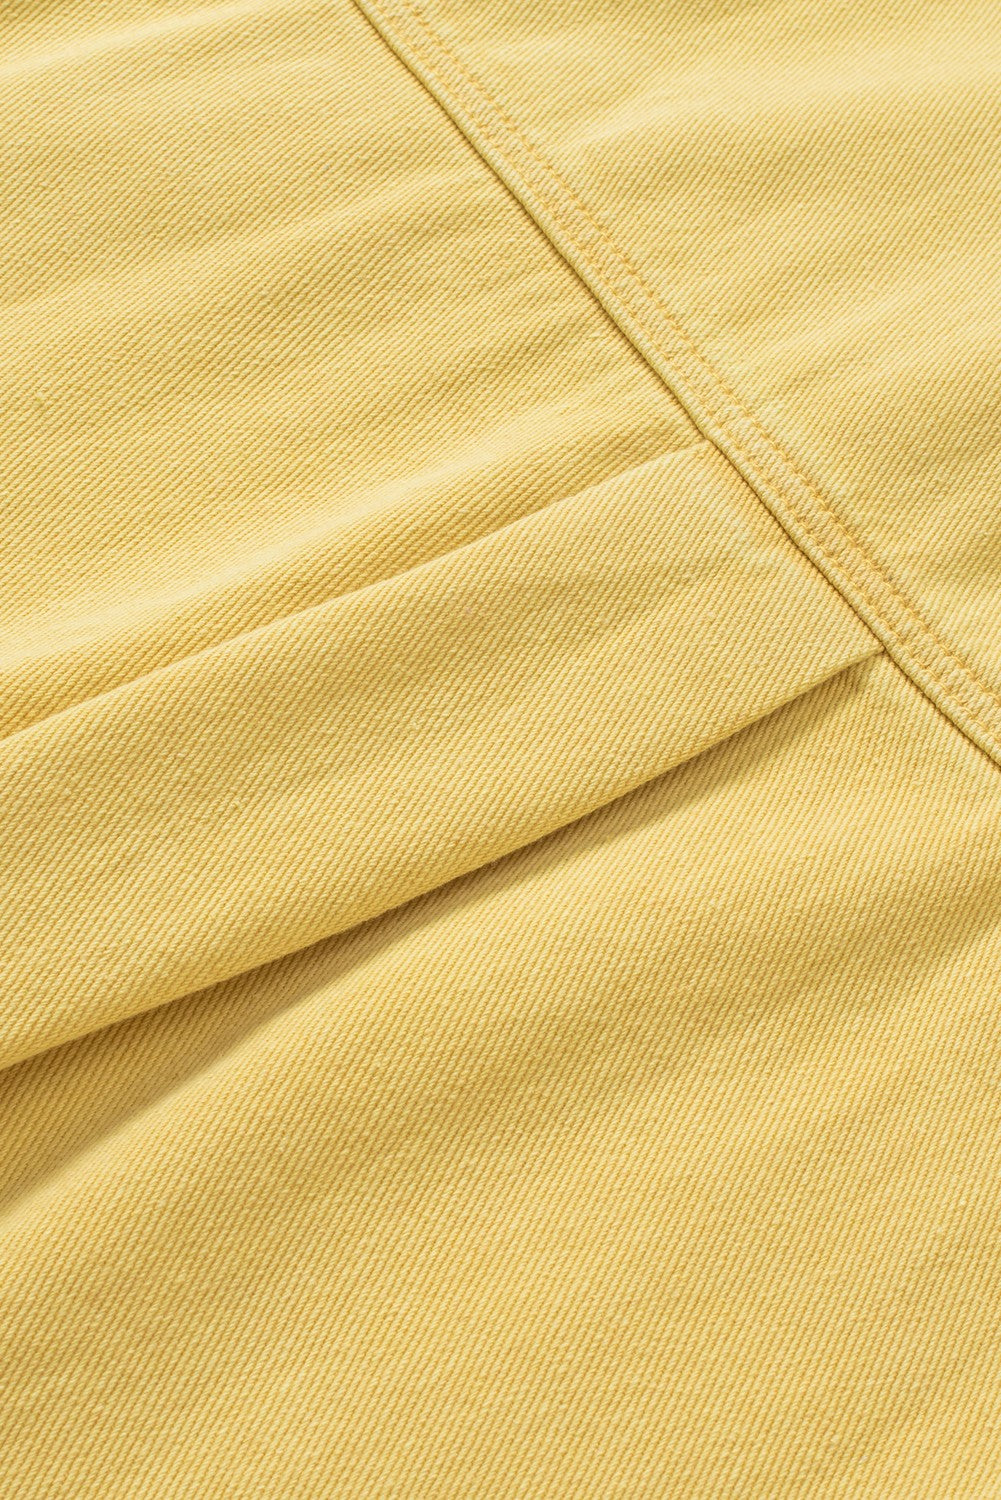 Veste en jean jaune effet vieilli à franges